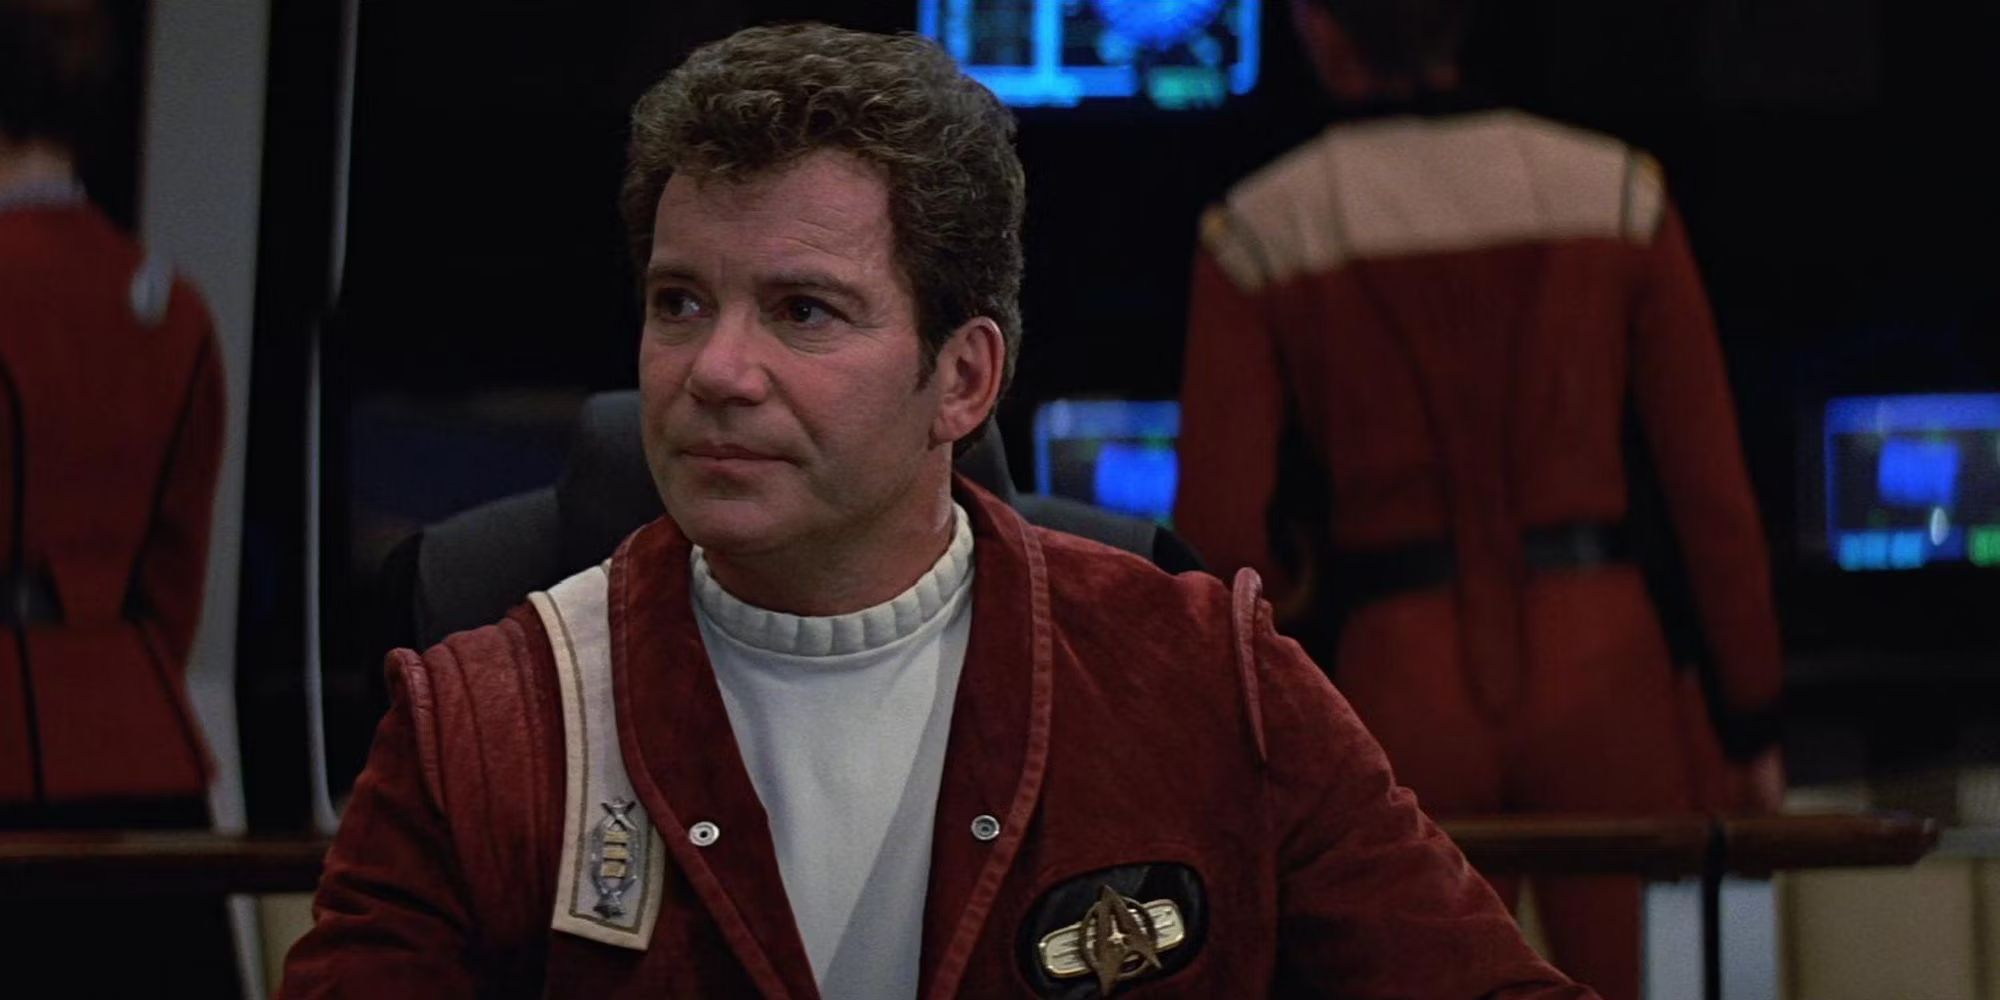 Captain Kirk aboard the Enterprise in Star Trek V The Final Frontier